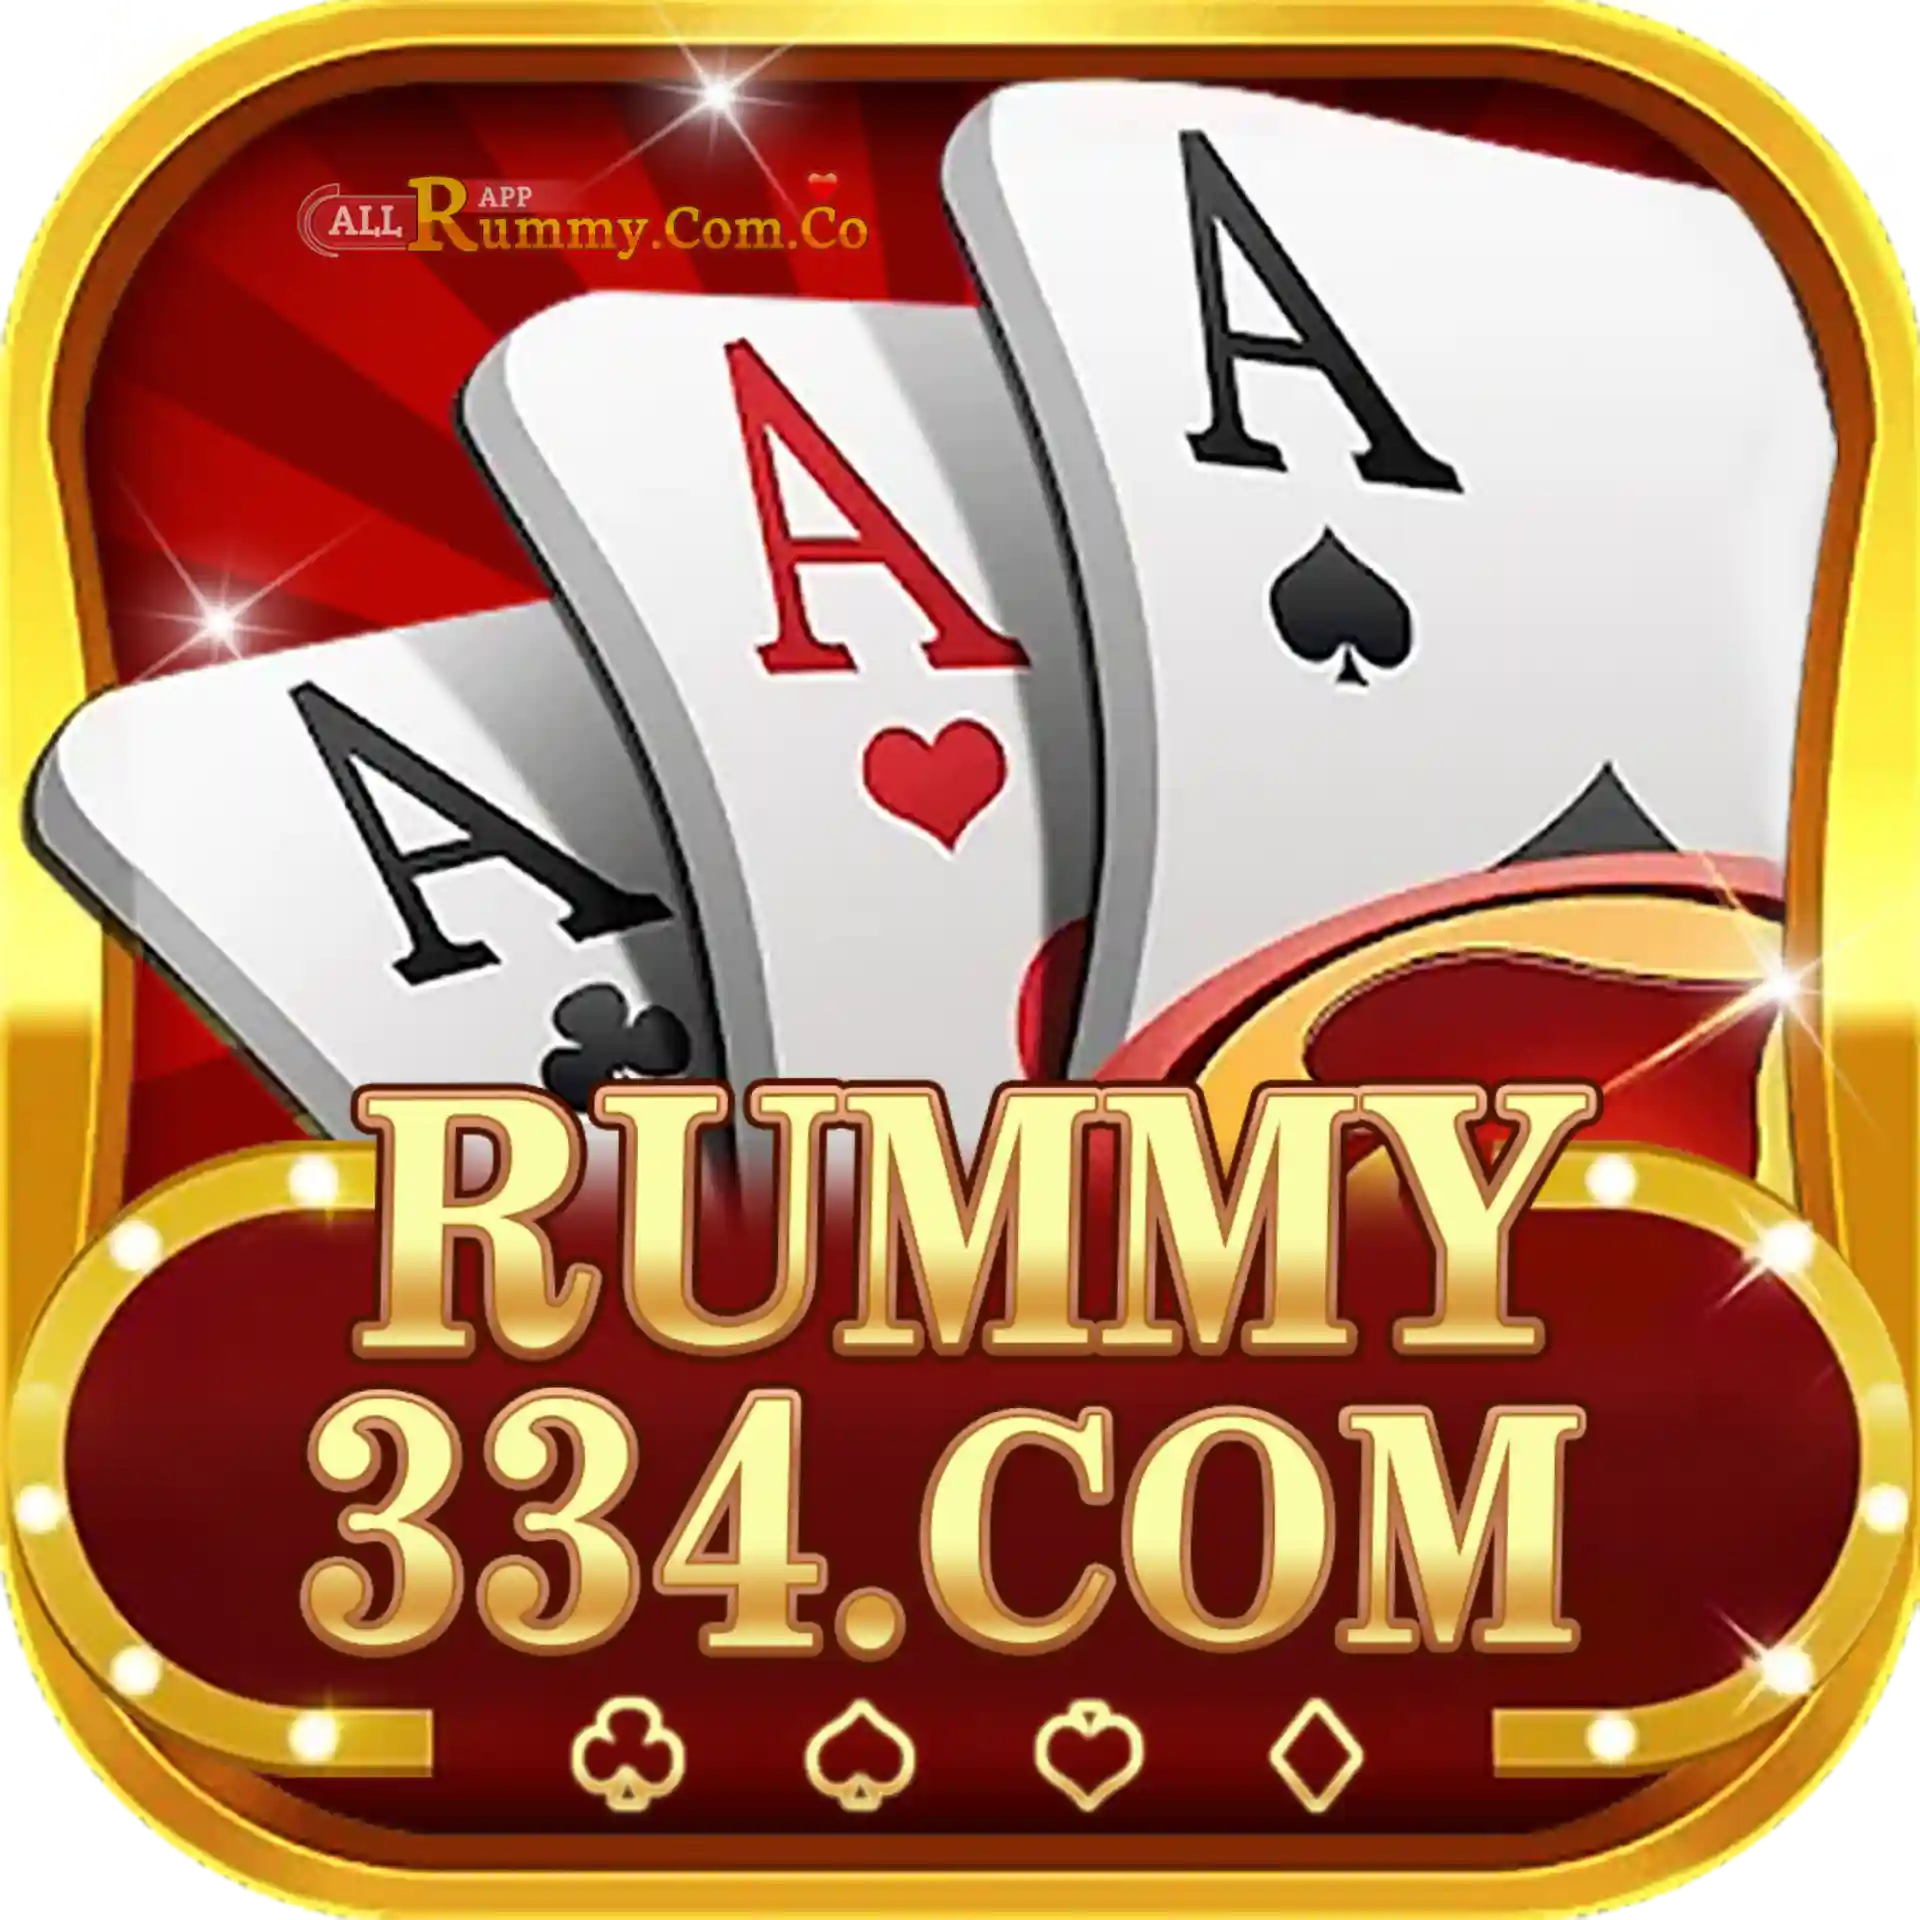 All Rummy App - All Rummy Apps - RummyBonusApp 334 Rummy